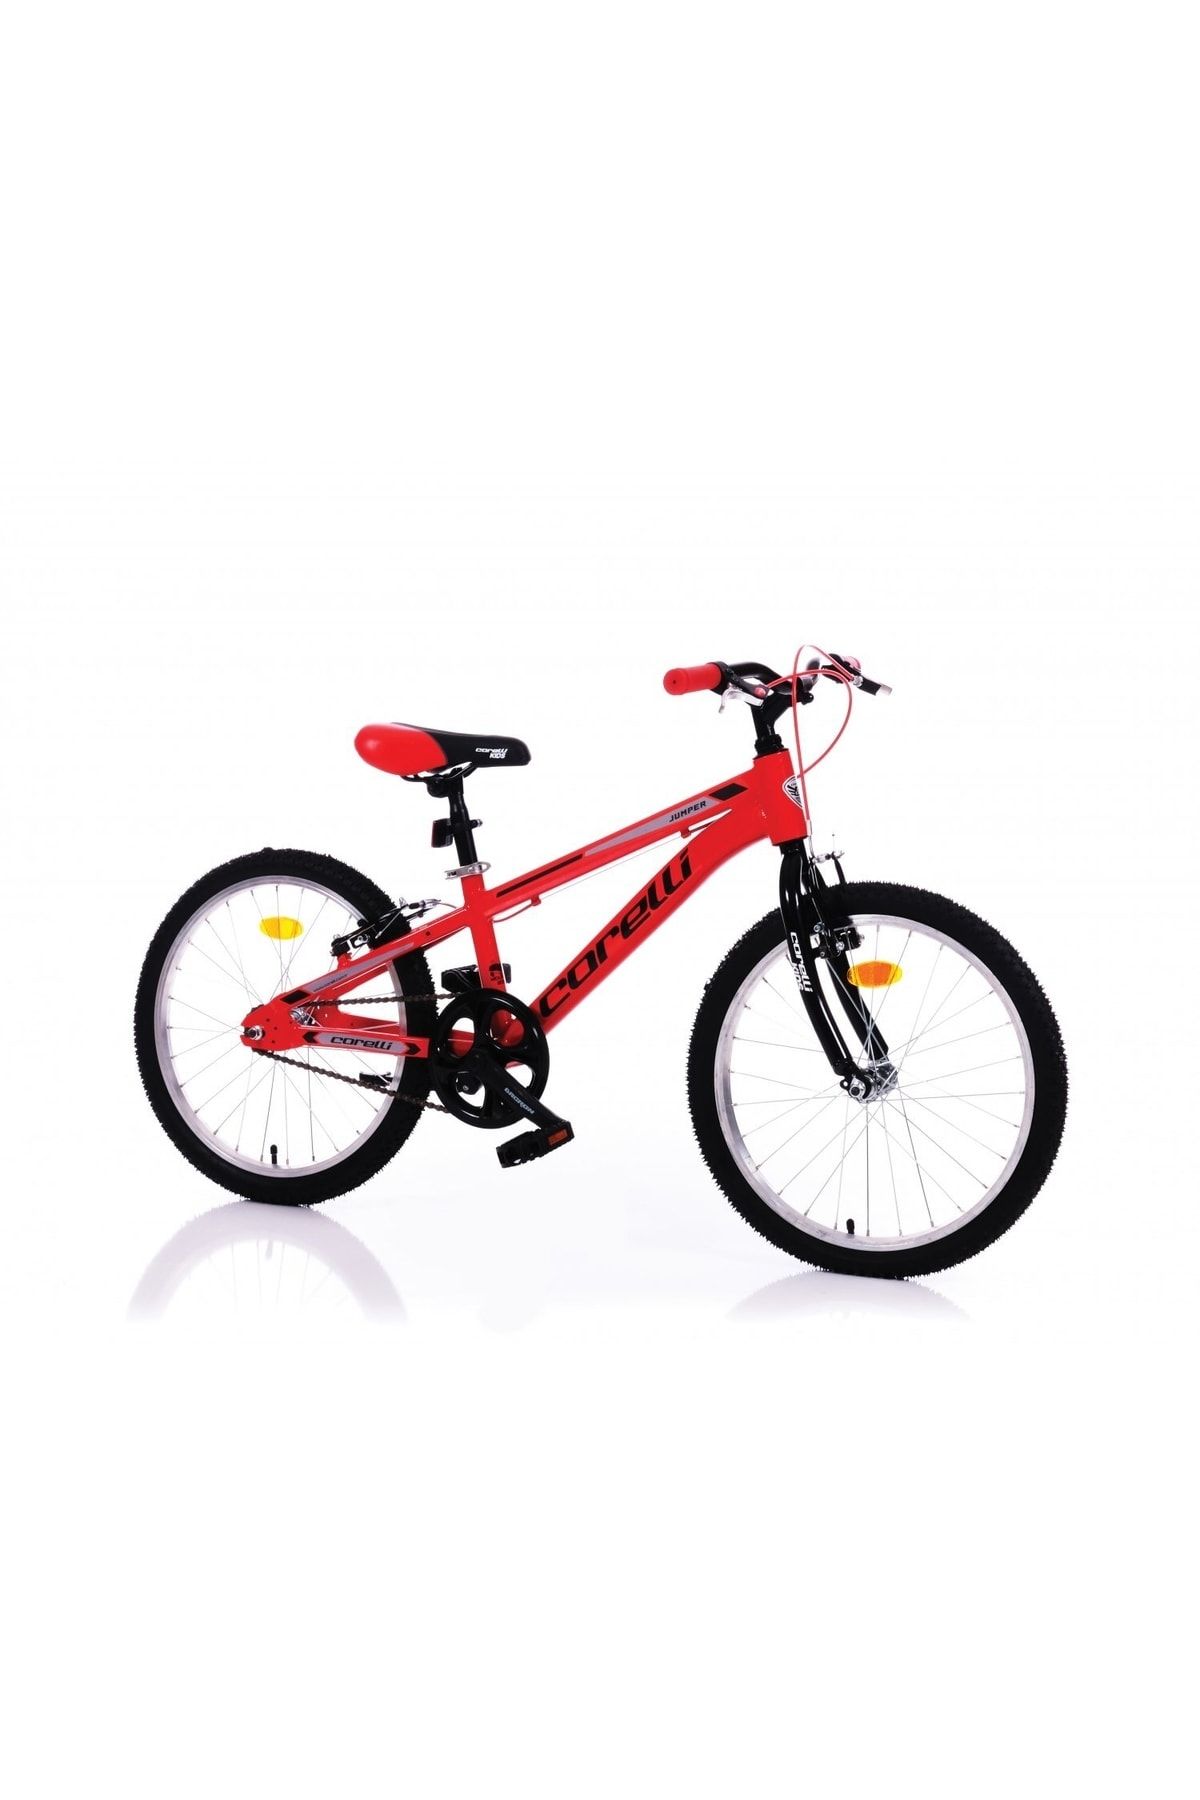 Corelli Jumper 20" Jant Çocuk Bisikleti Jumper.030311 Kırmızı-sıyah - Grı